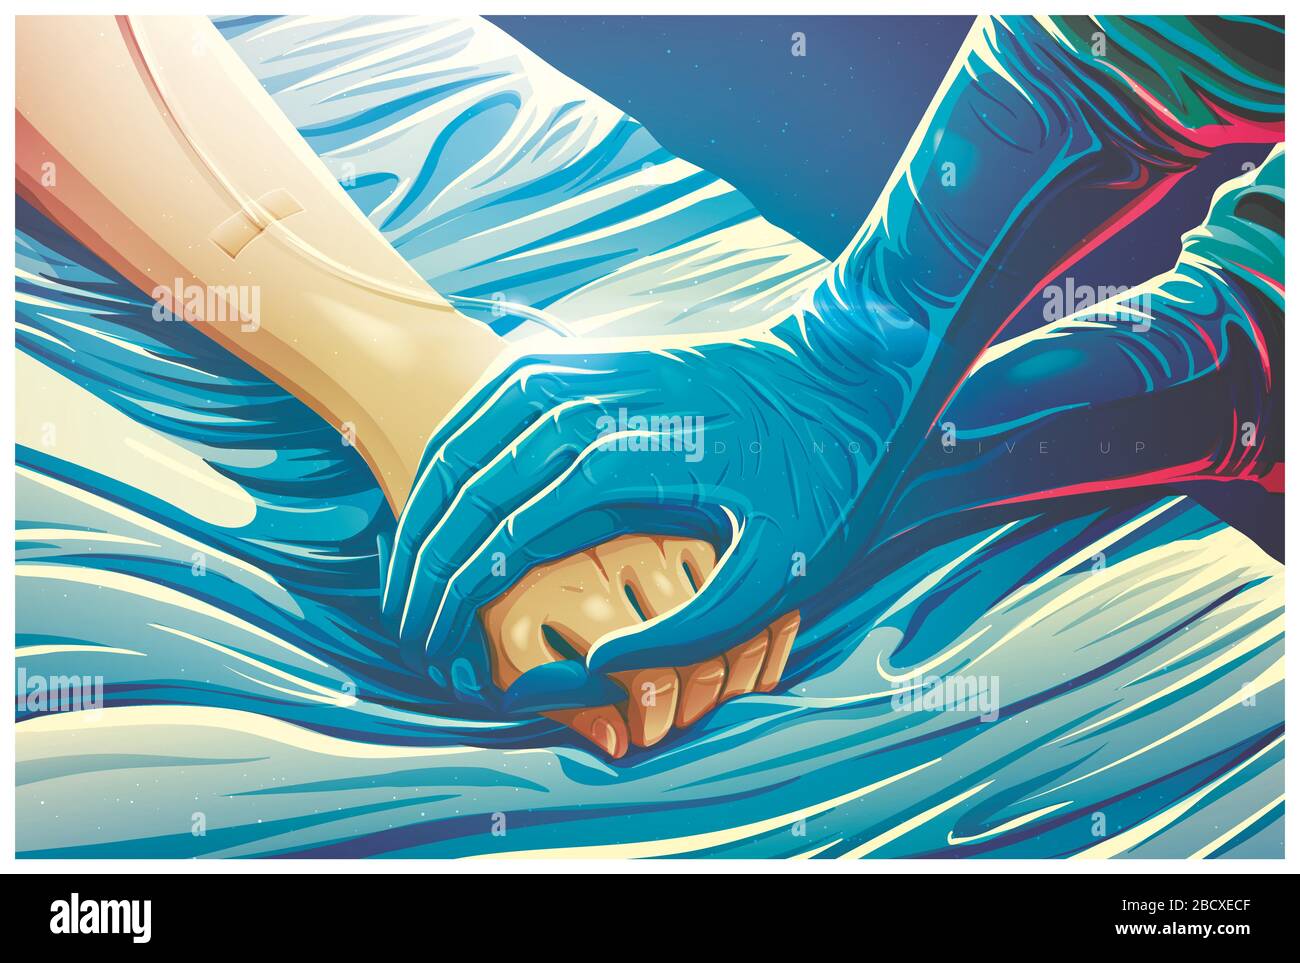 Eine Abbildung des Arztes zeigt, wie die Hand des Patienten gehalten wird, um den Patienten zur Bekämpfung der Krankheit zu ermutigen und ihn zu beruhigen oder Unterstützung oder Ermutigung zu senden Stock Vektor